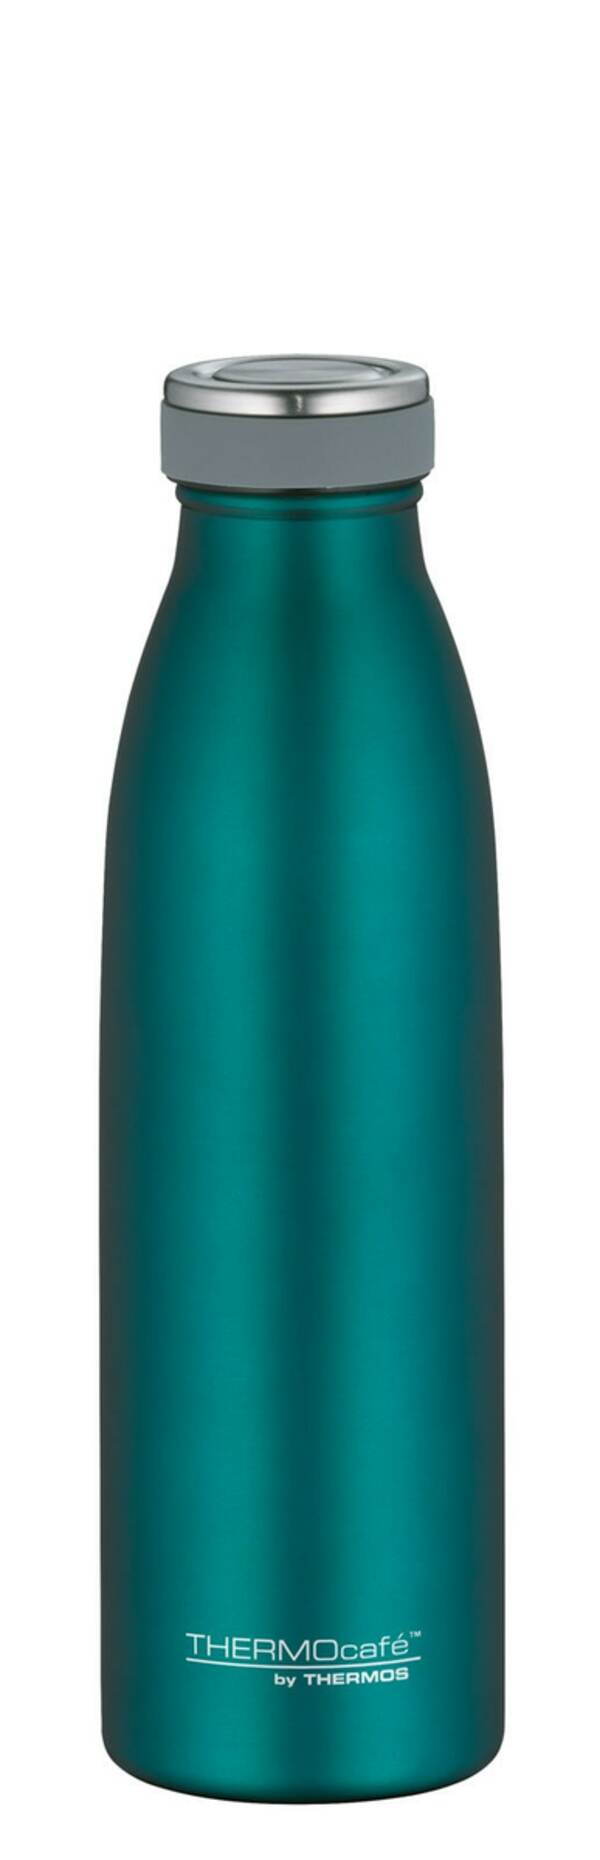 Bild 1 von THERMOcafe by THERMOS Isolierflasche TC 500 ml Edelstahl grün matt